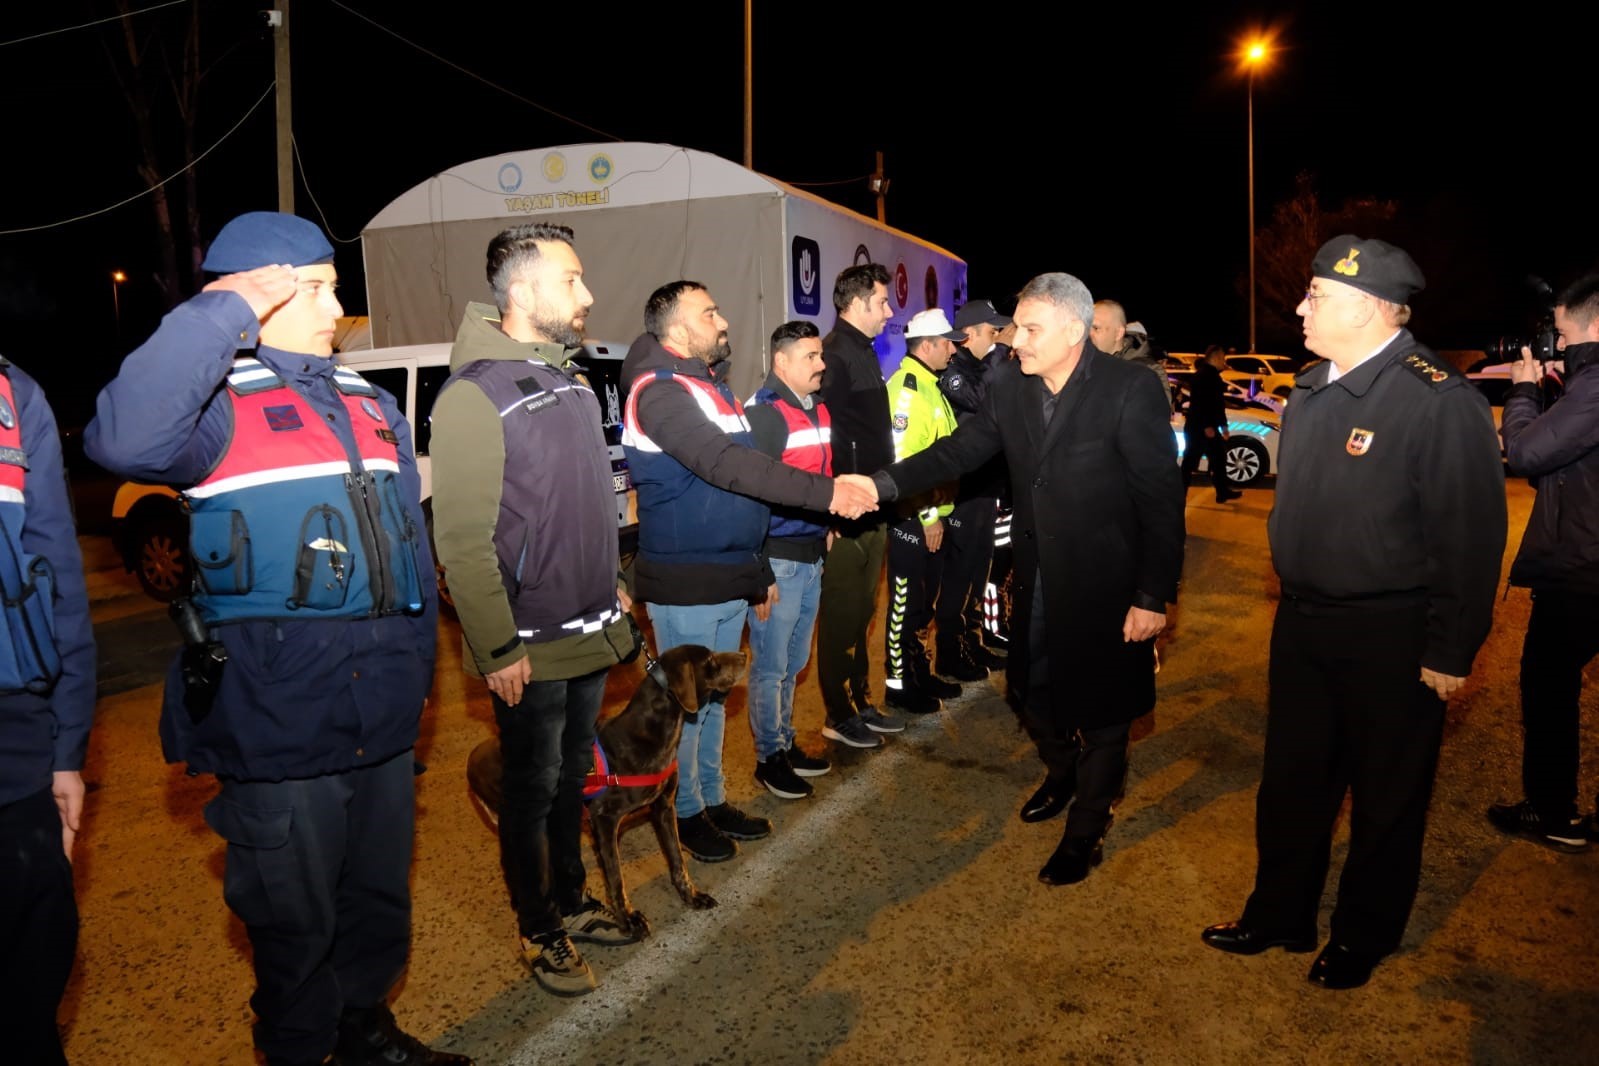 Vali Özkan yılbaşı gecesi çalışan kamu görevlilerini ziyaret etti